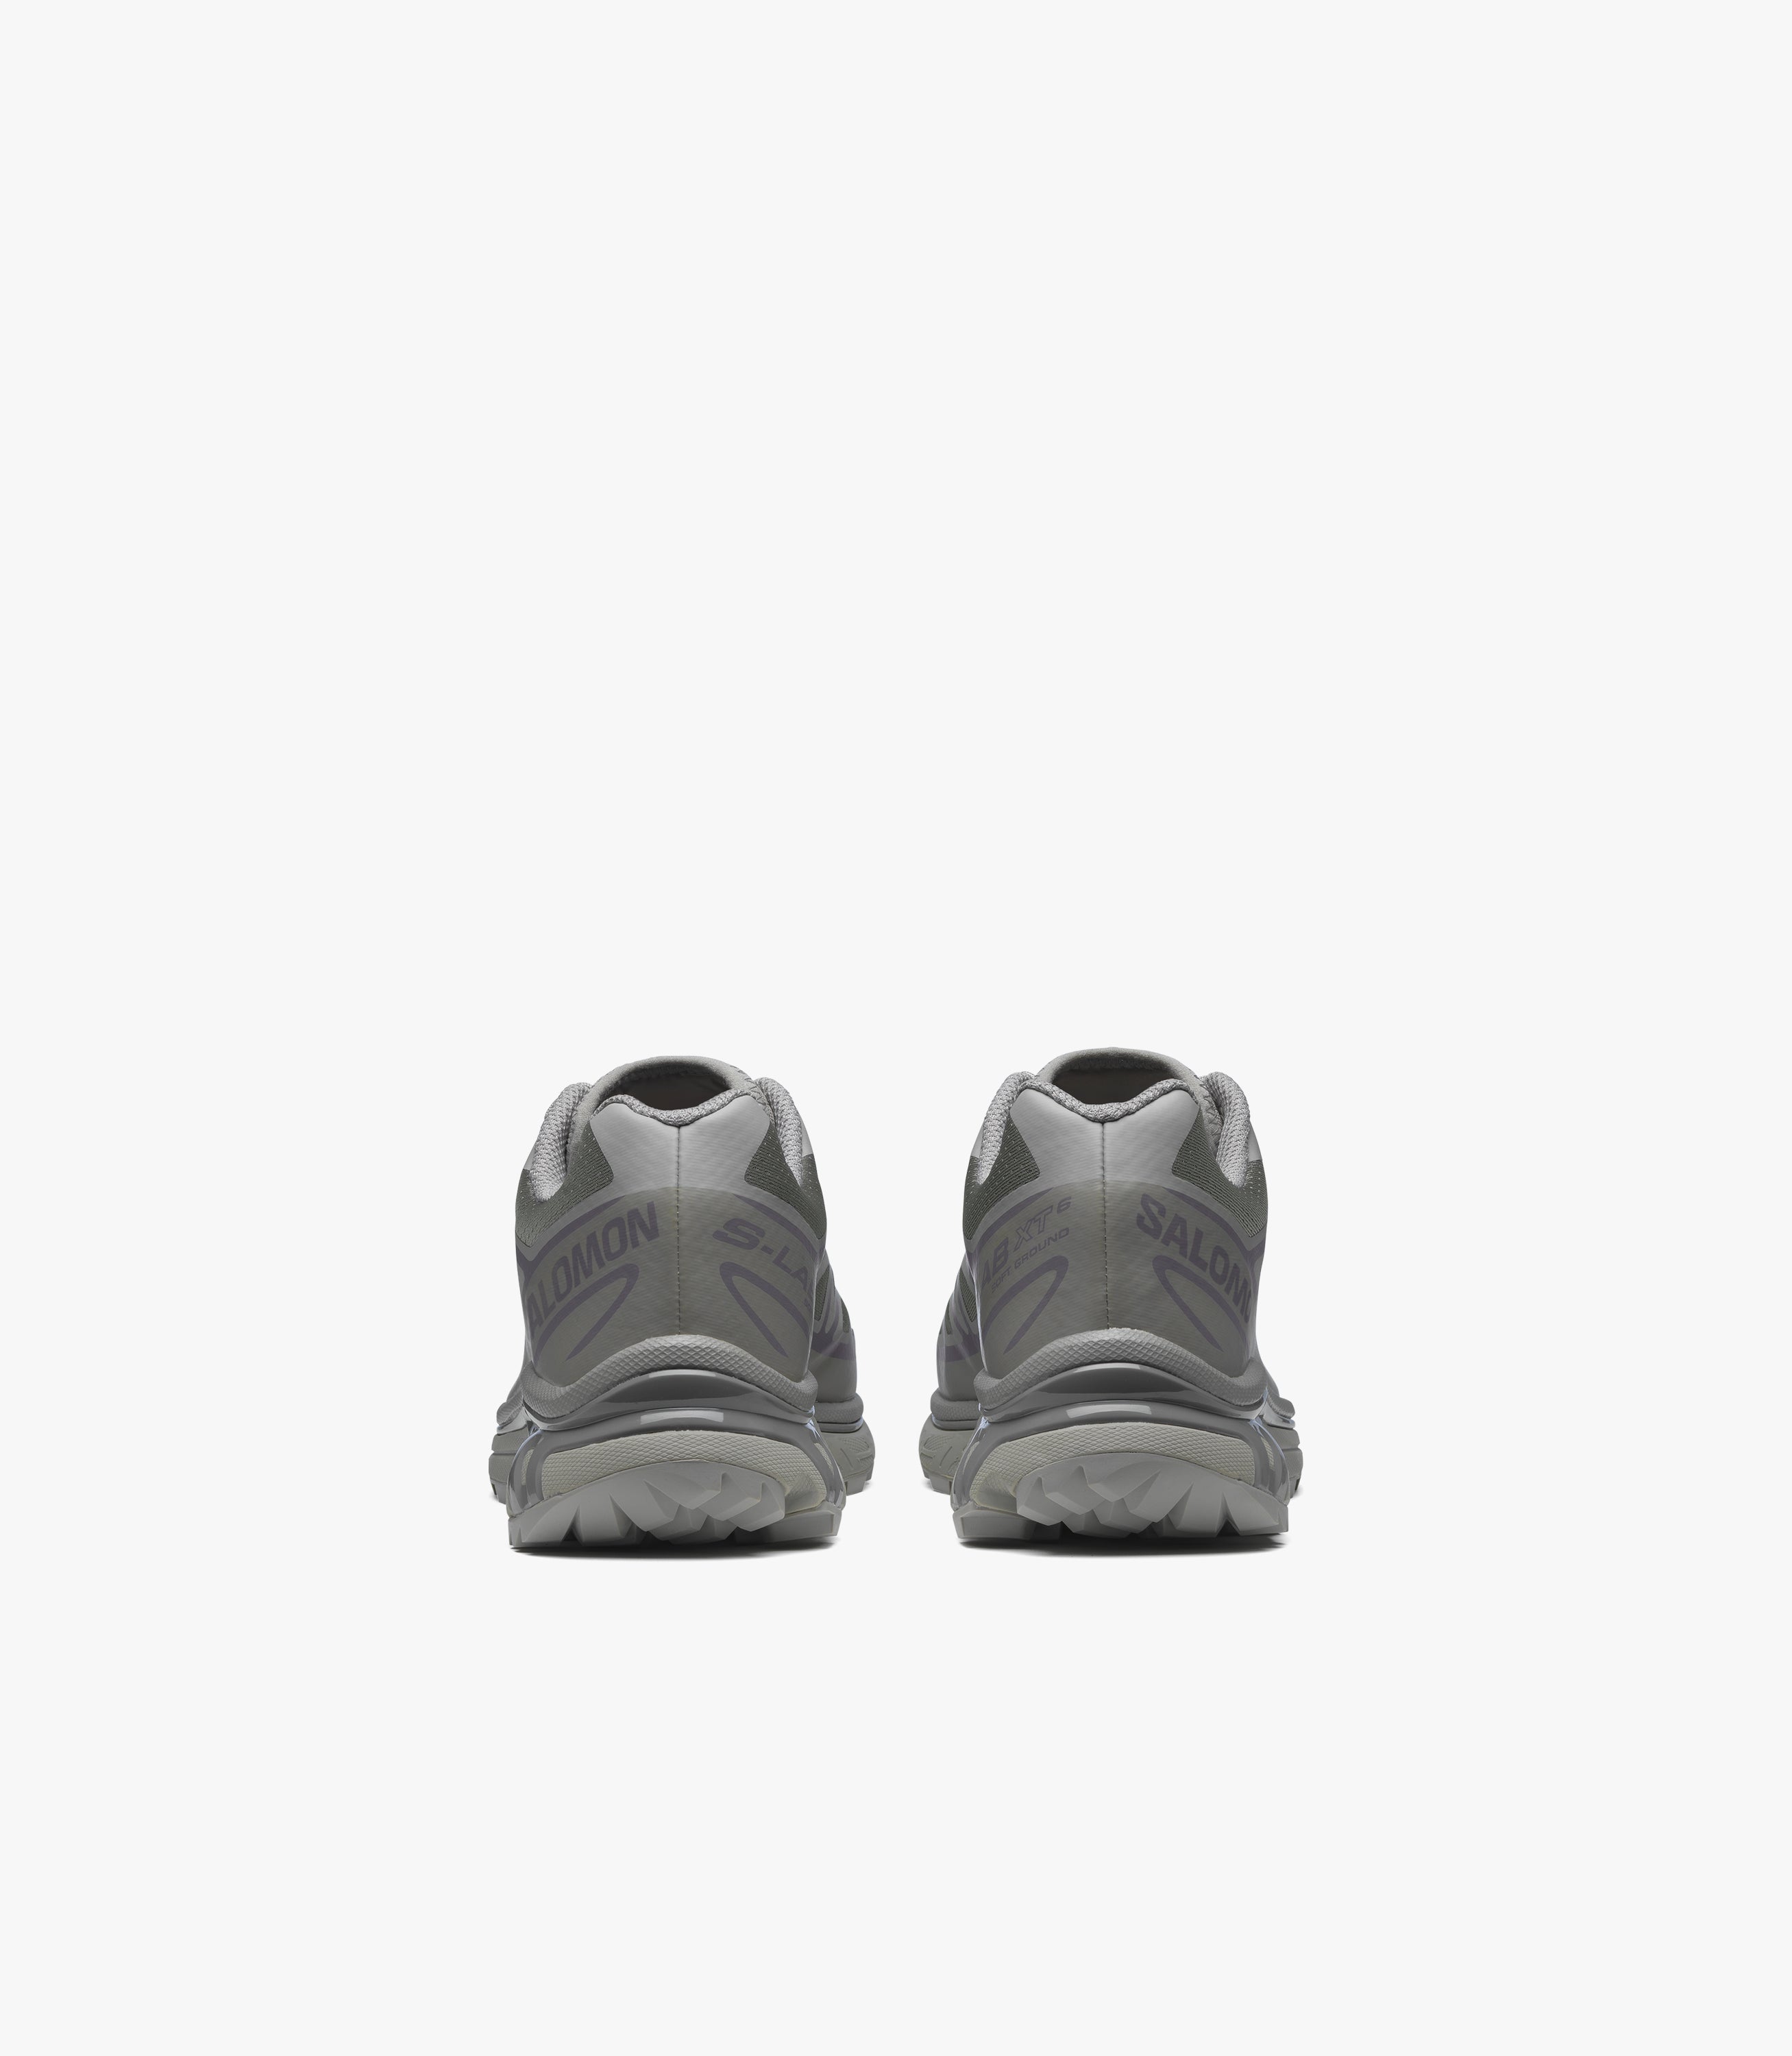 sneaker salomon xt 6 ghost gray ghost gray gray f 3